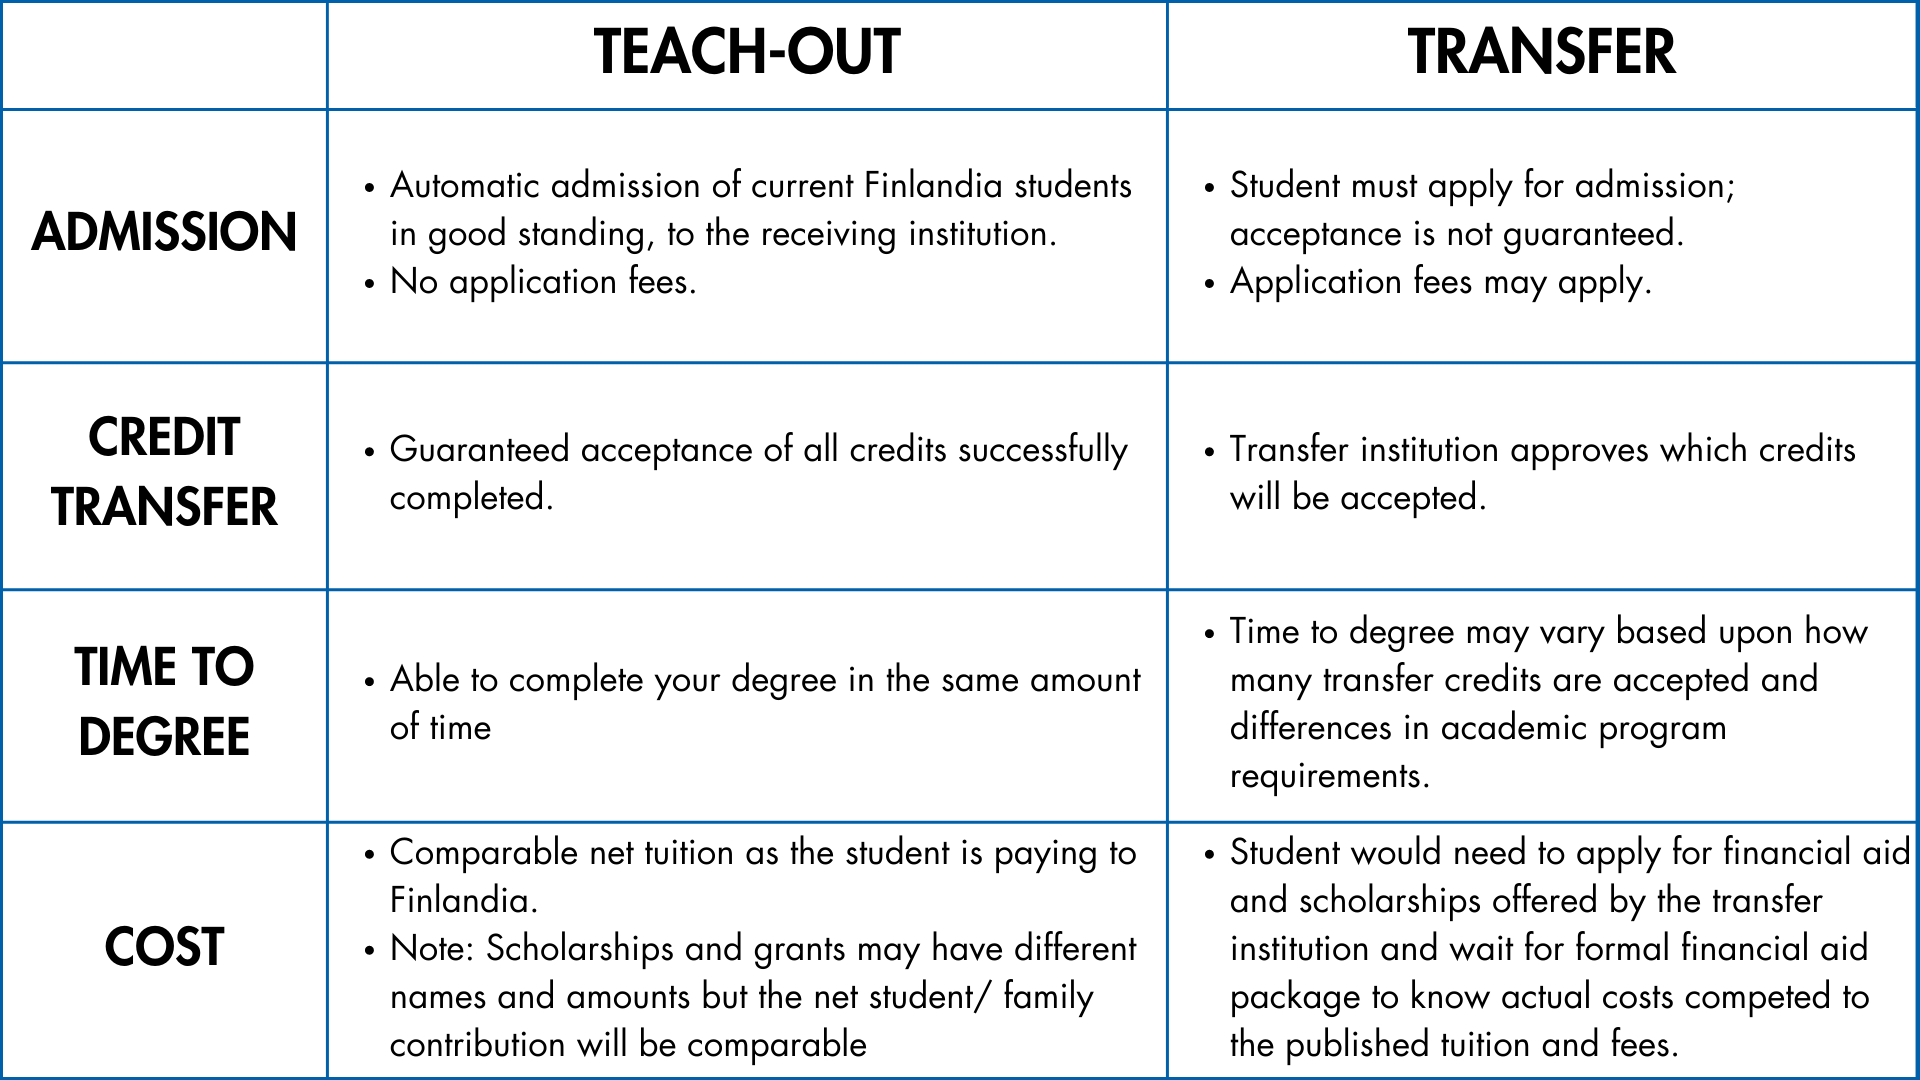 Teach-Out vs Transfer